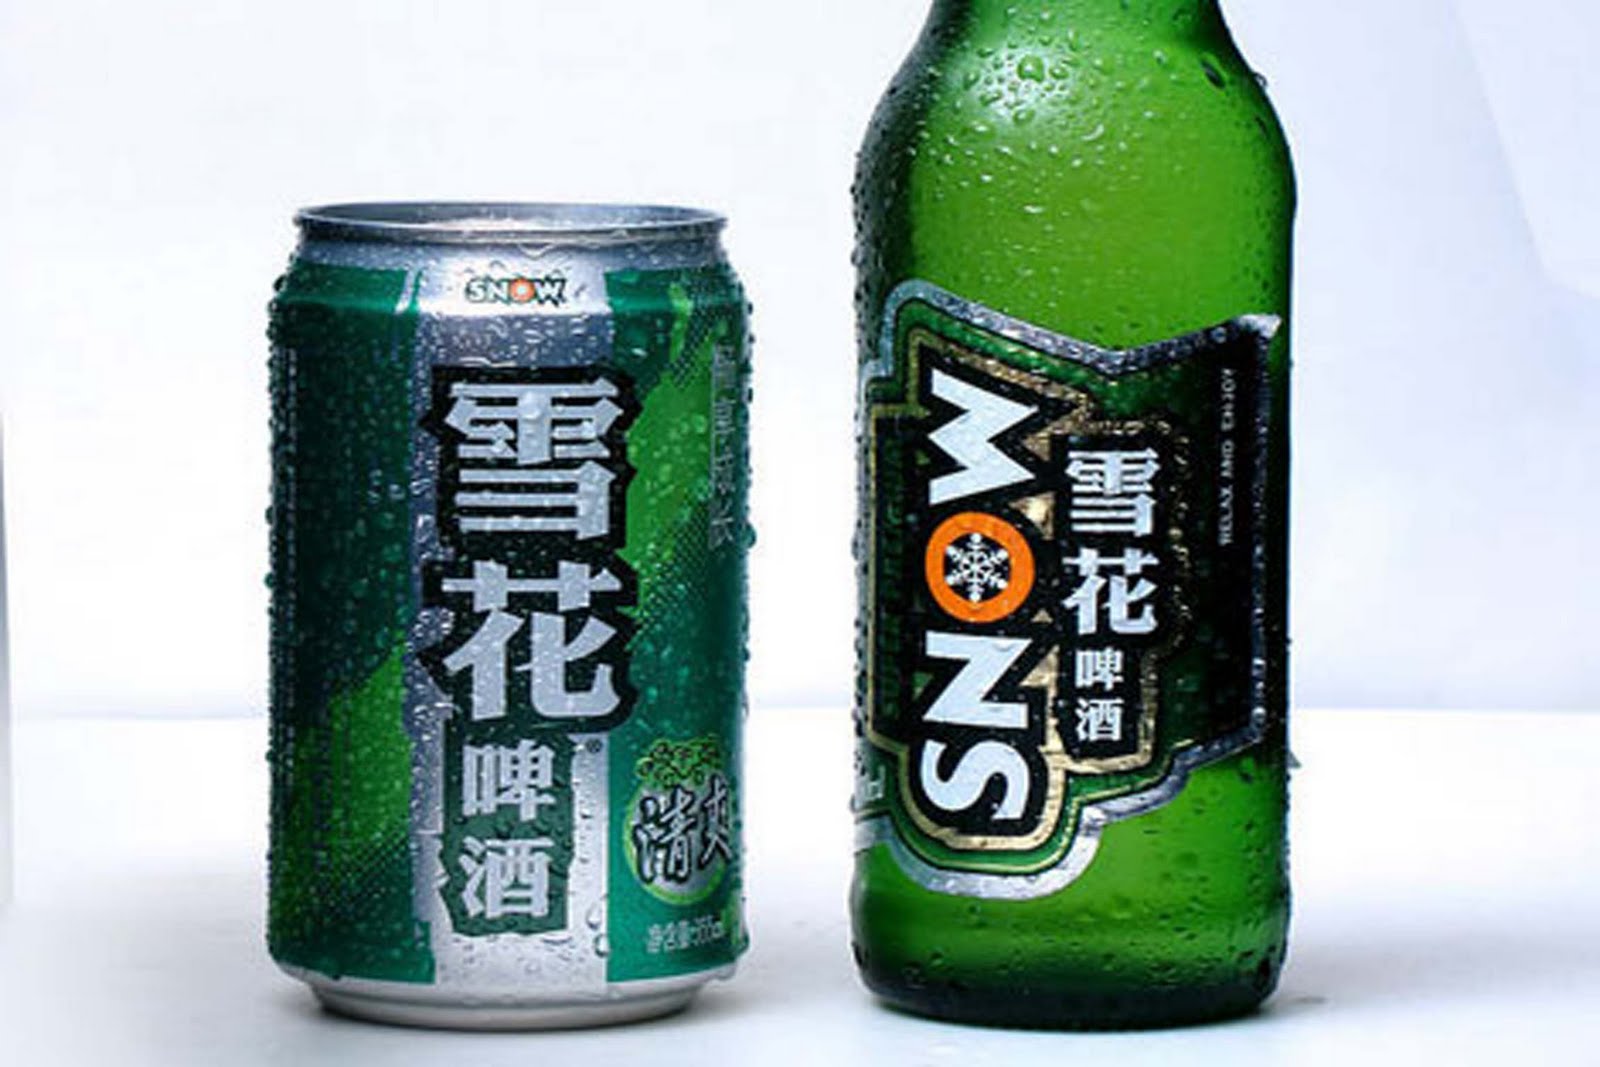 Bière Snow Chine